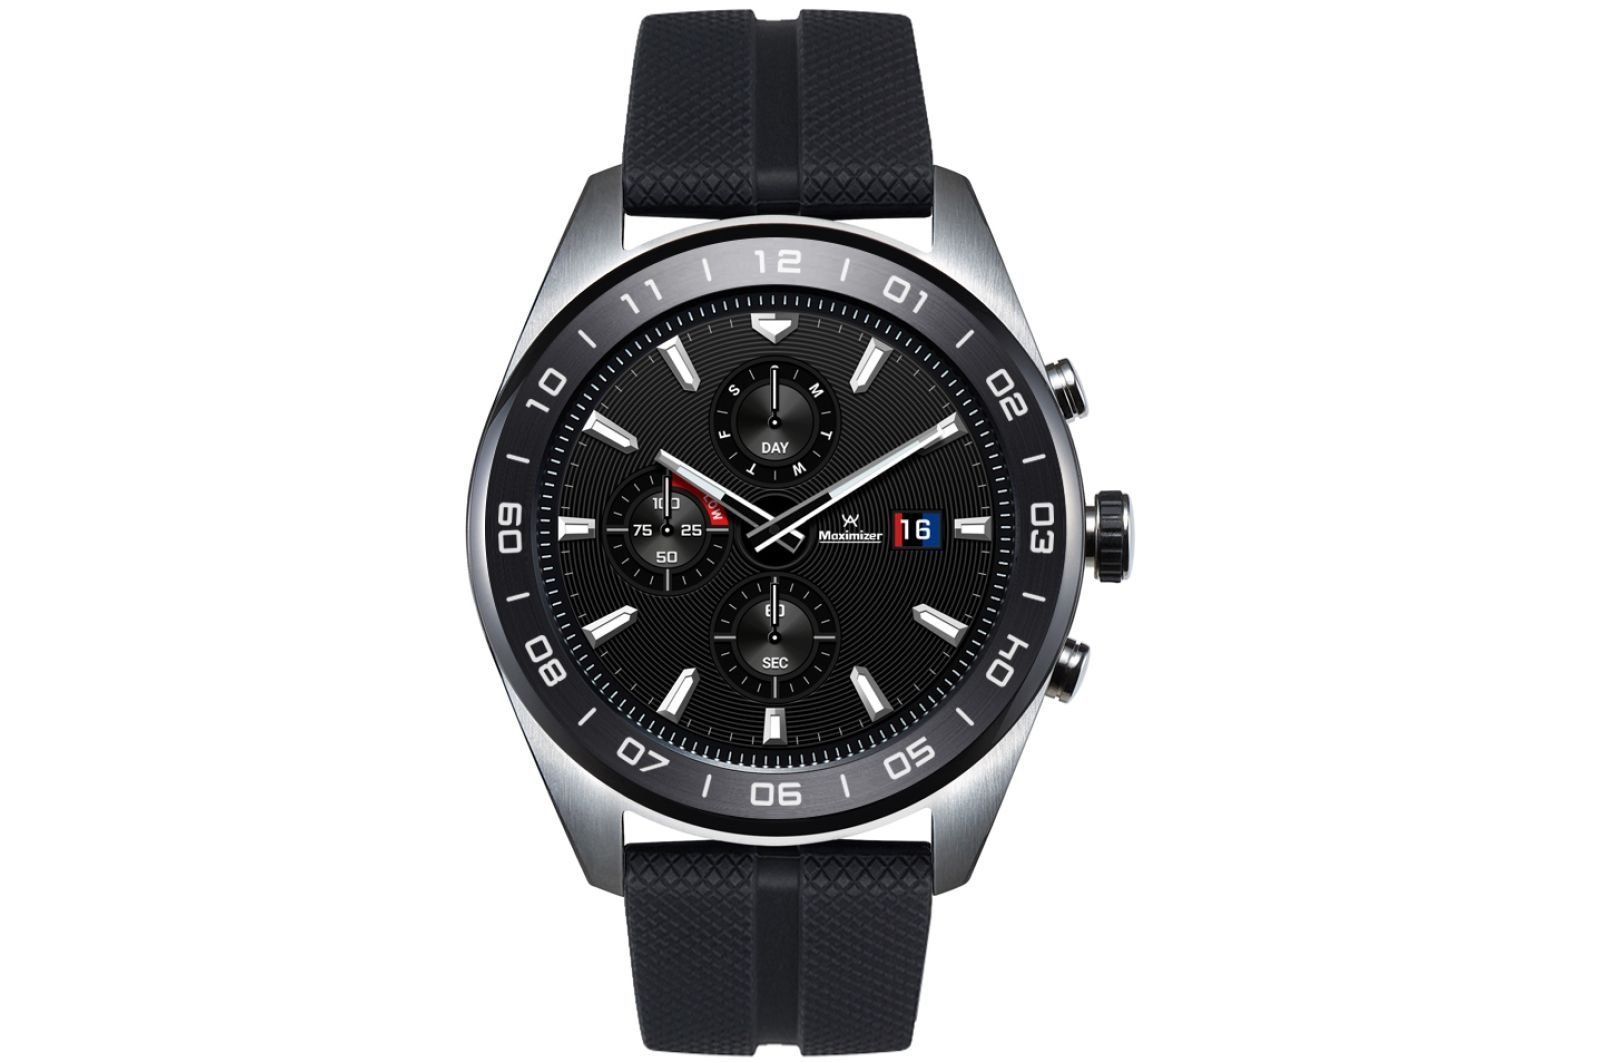 Montres intelligentes LG Watch W7 - avantages et inconvénients